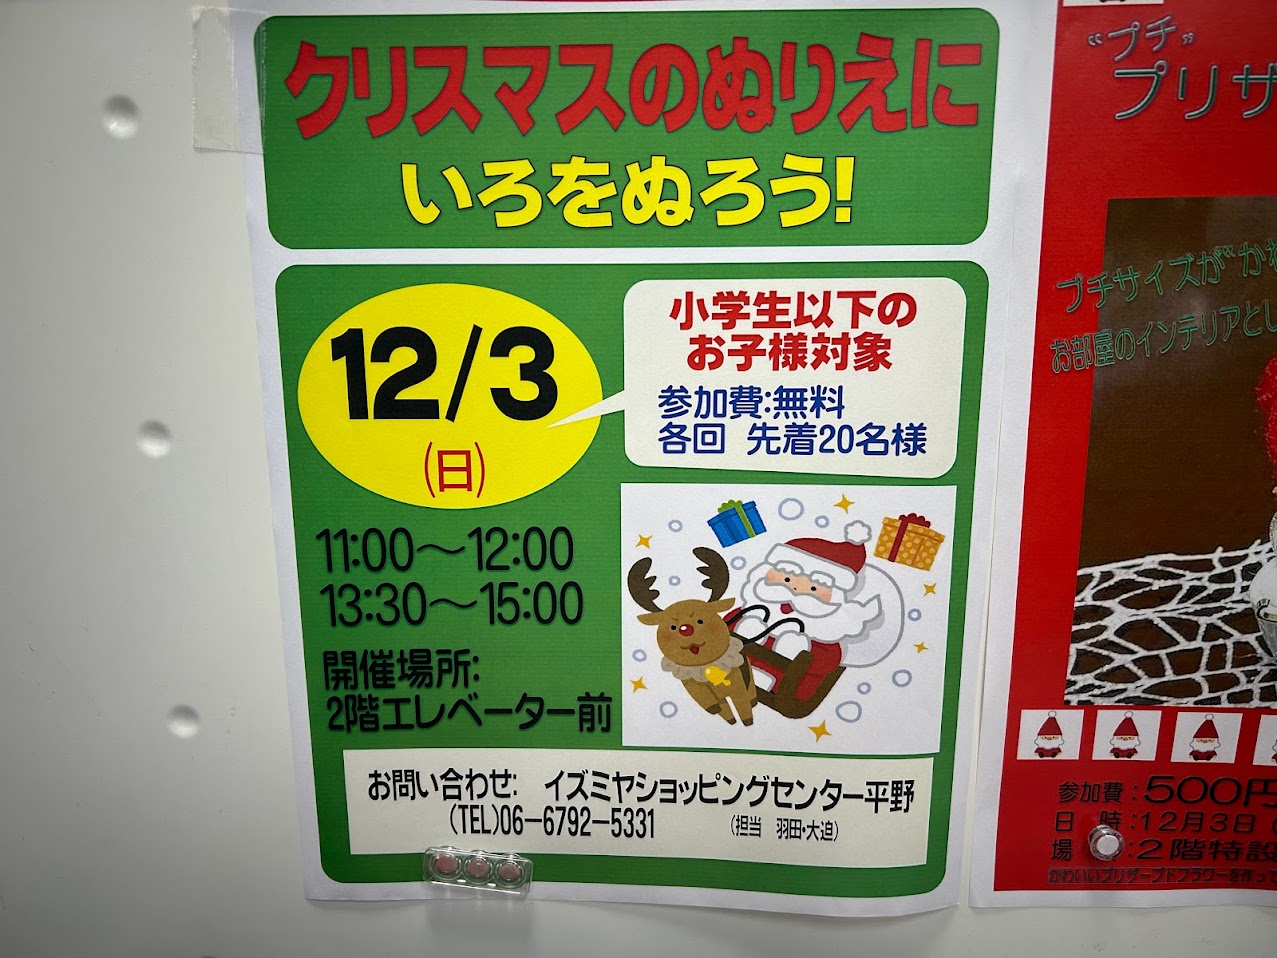 イズミヤショッピングセンター平野クリスマス塗り絵イベントのお知らせ